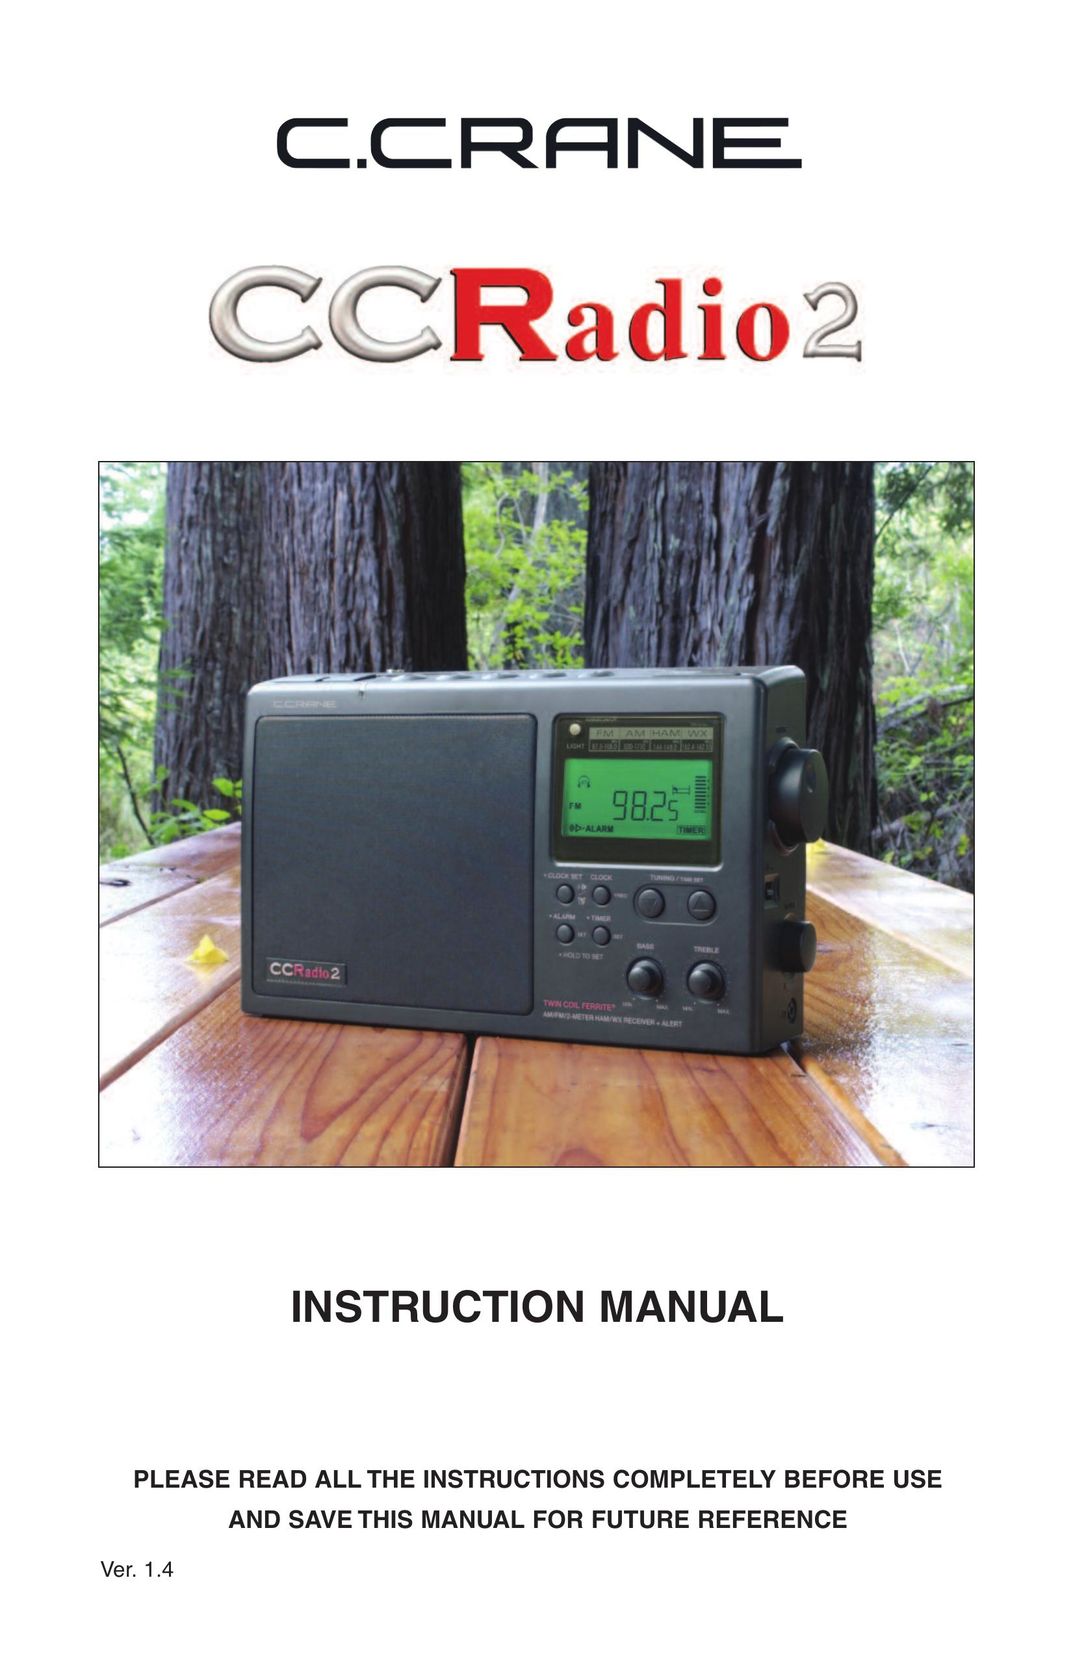 C. Crane CC Radio 2 Radio User Manual